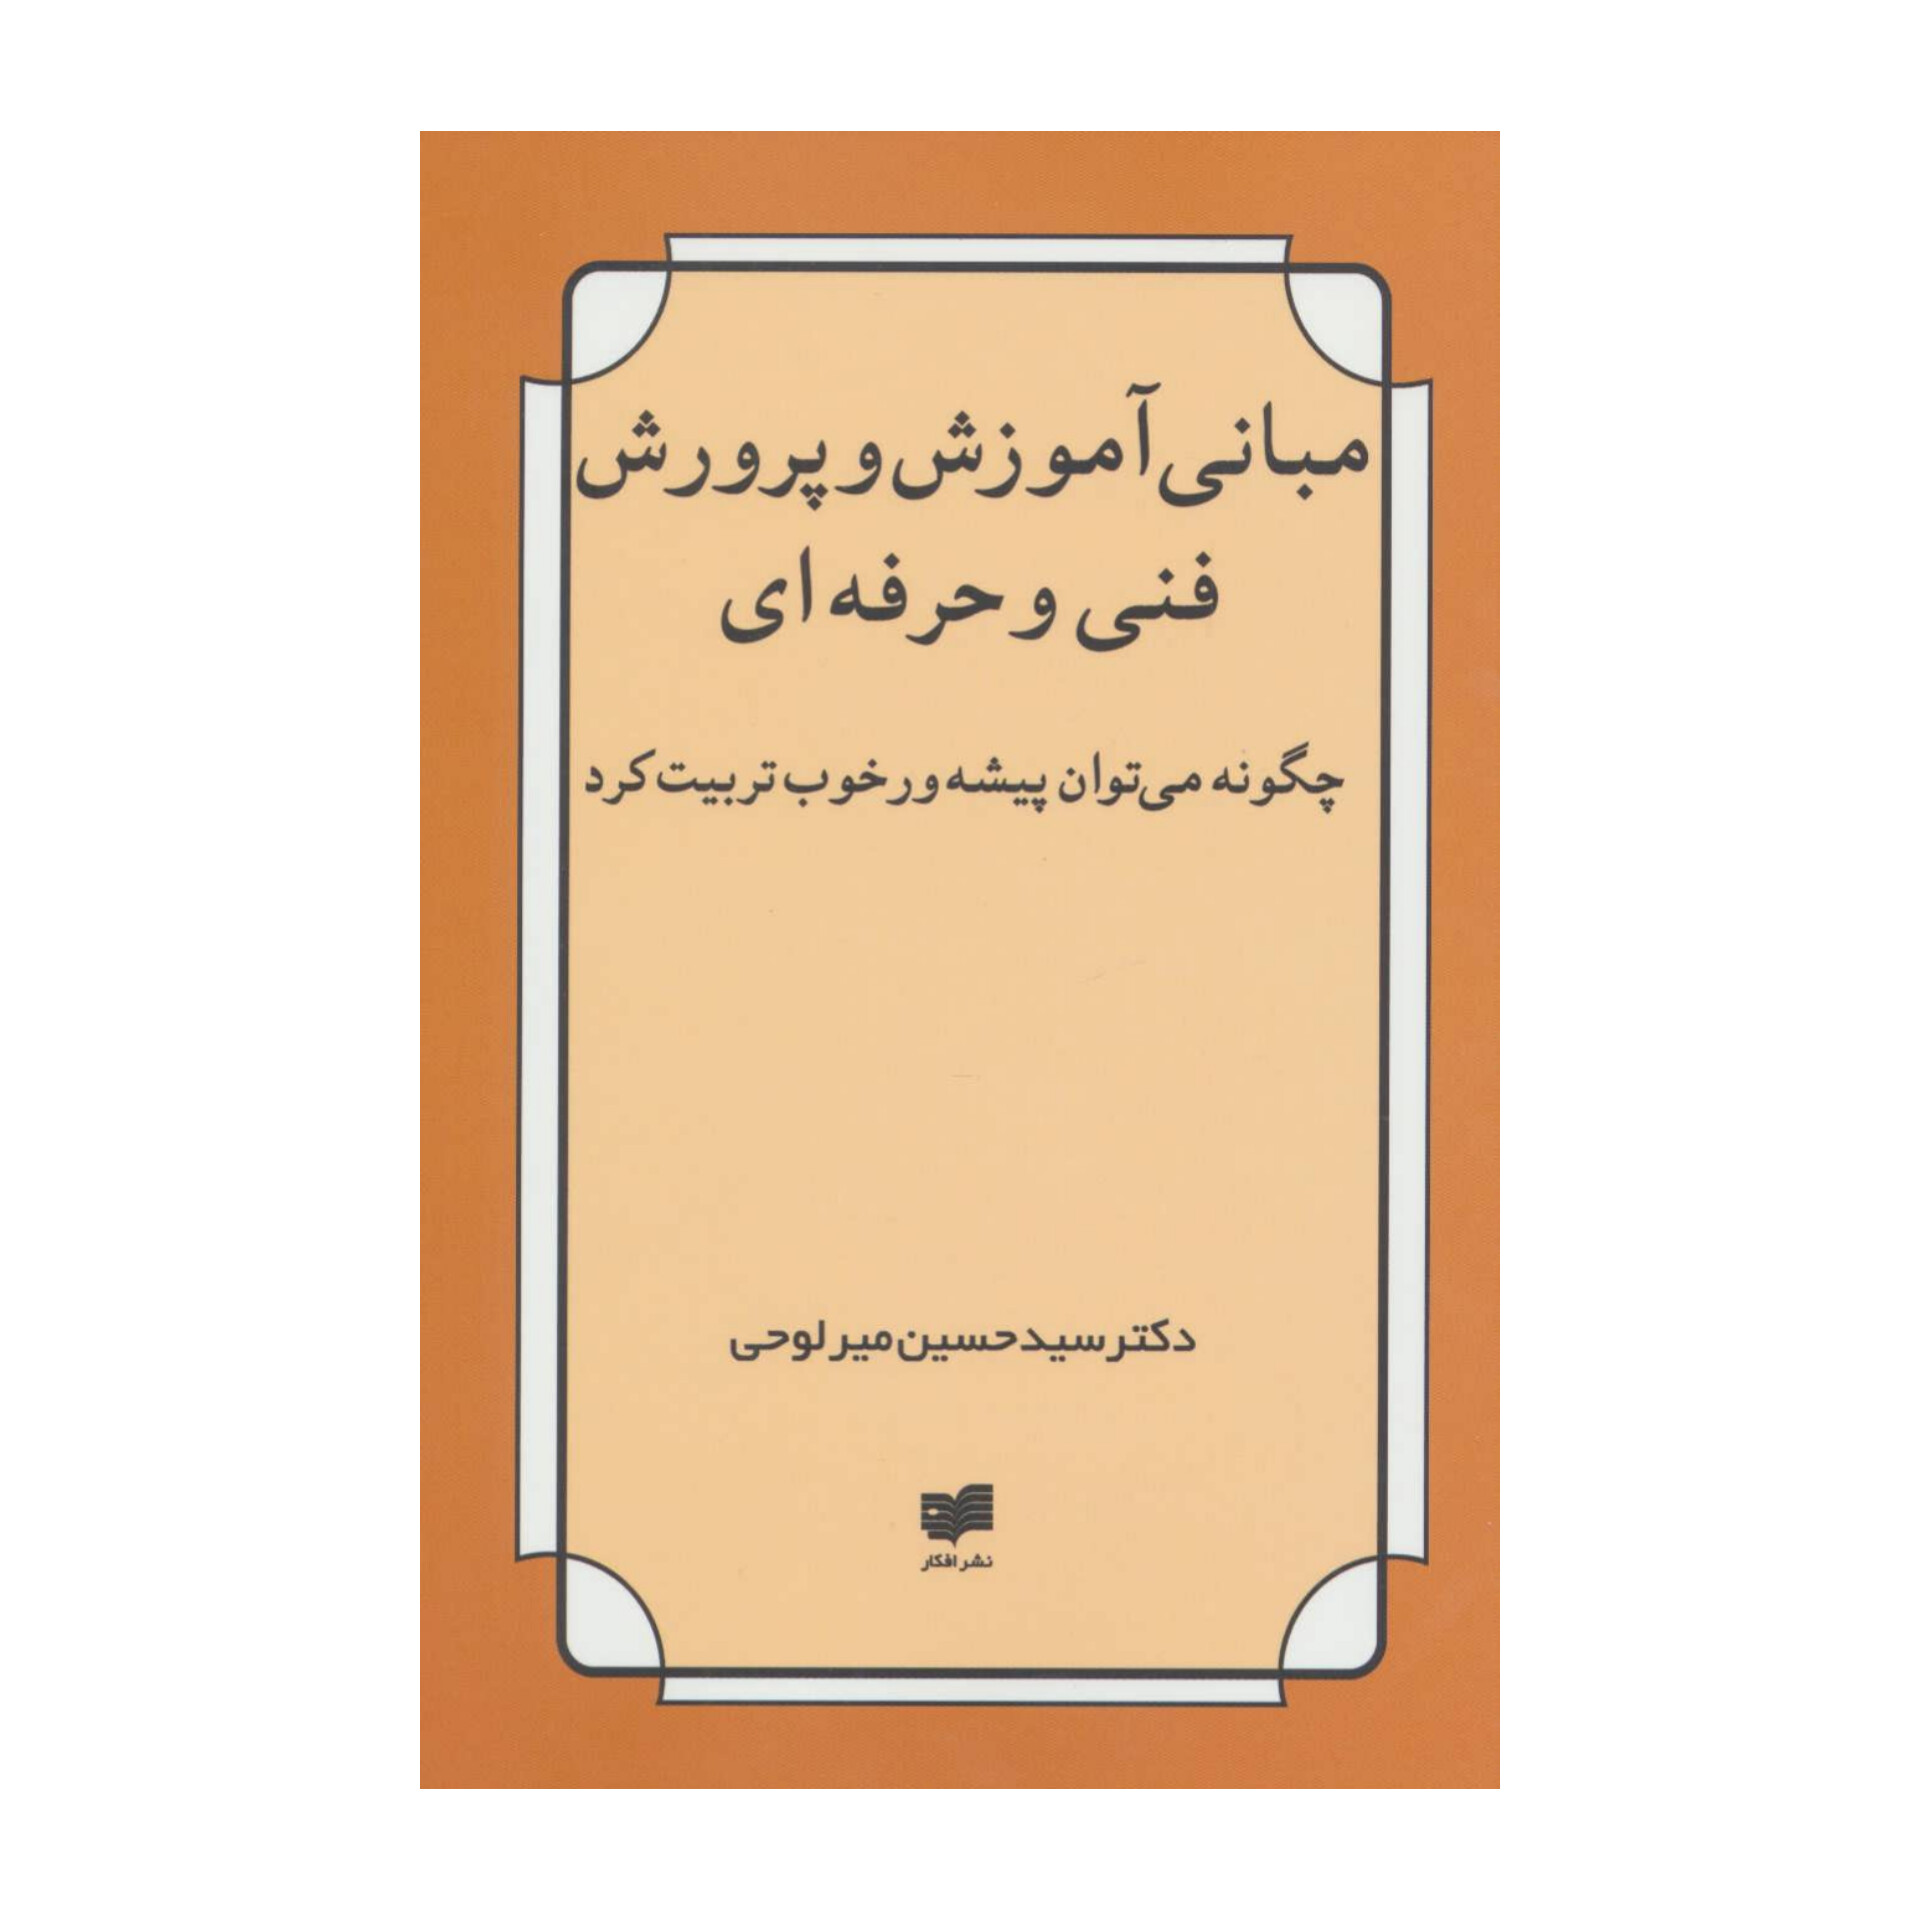 کتاب مبانی آموزش و پرورش فنی و حرفه ای (PDF قابل سرچ)/ دکتر سیدحسین میرلوحی